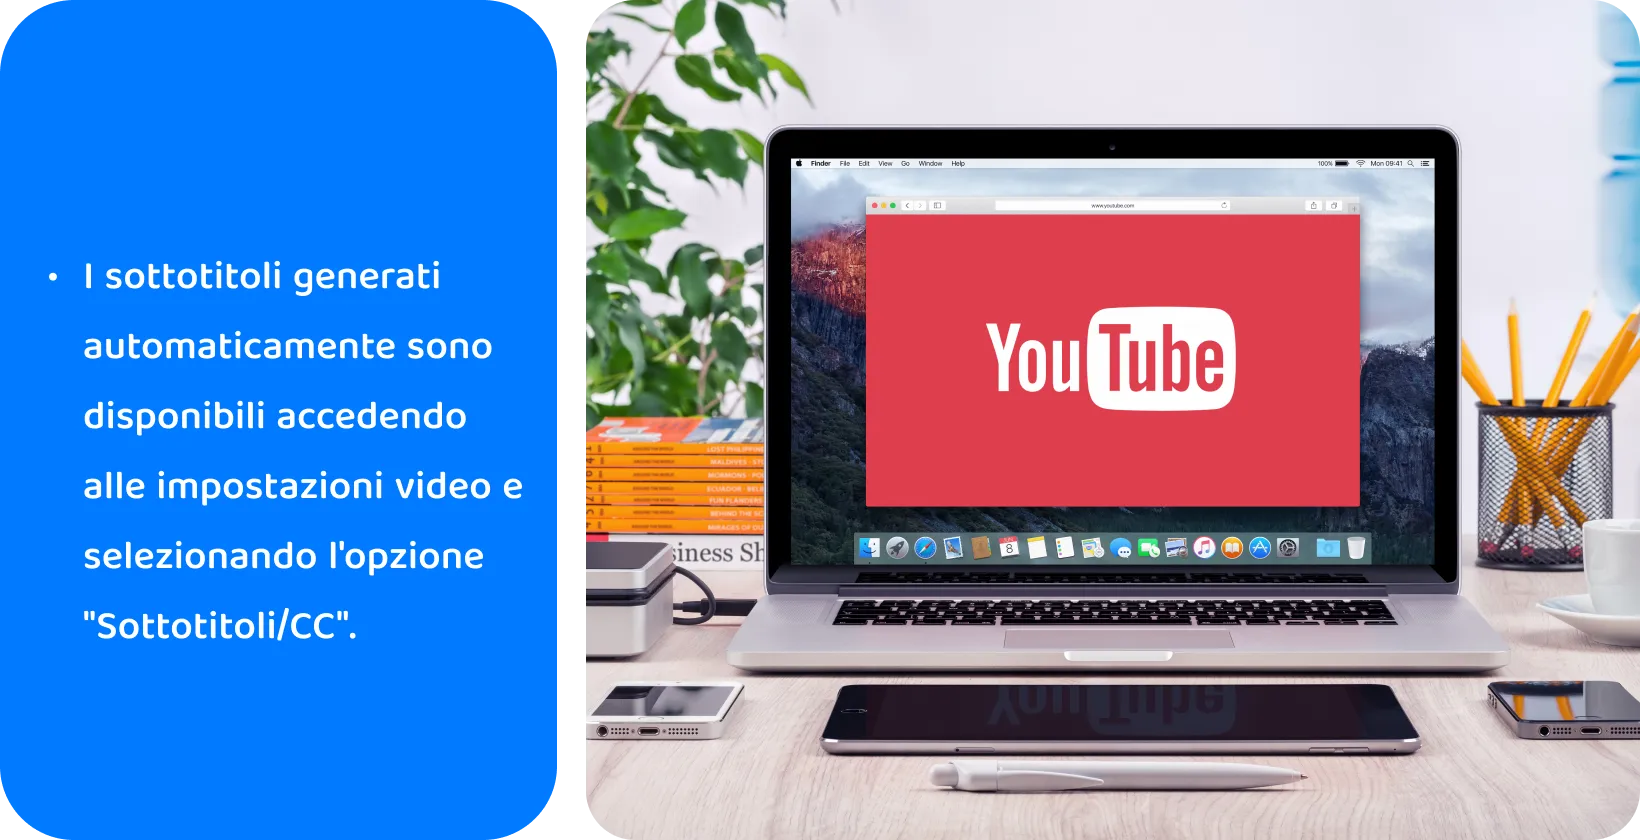 YouTube sullo schermo di un laptop, promuovendo l'uso di didascalie generate automaticamente per l'accessibilità video e la SEO.